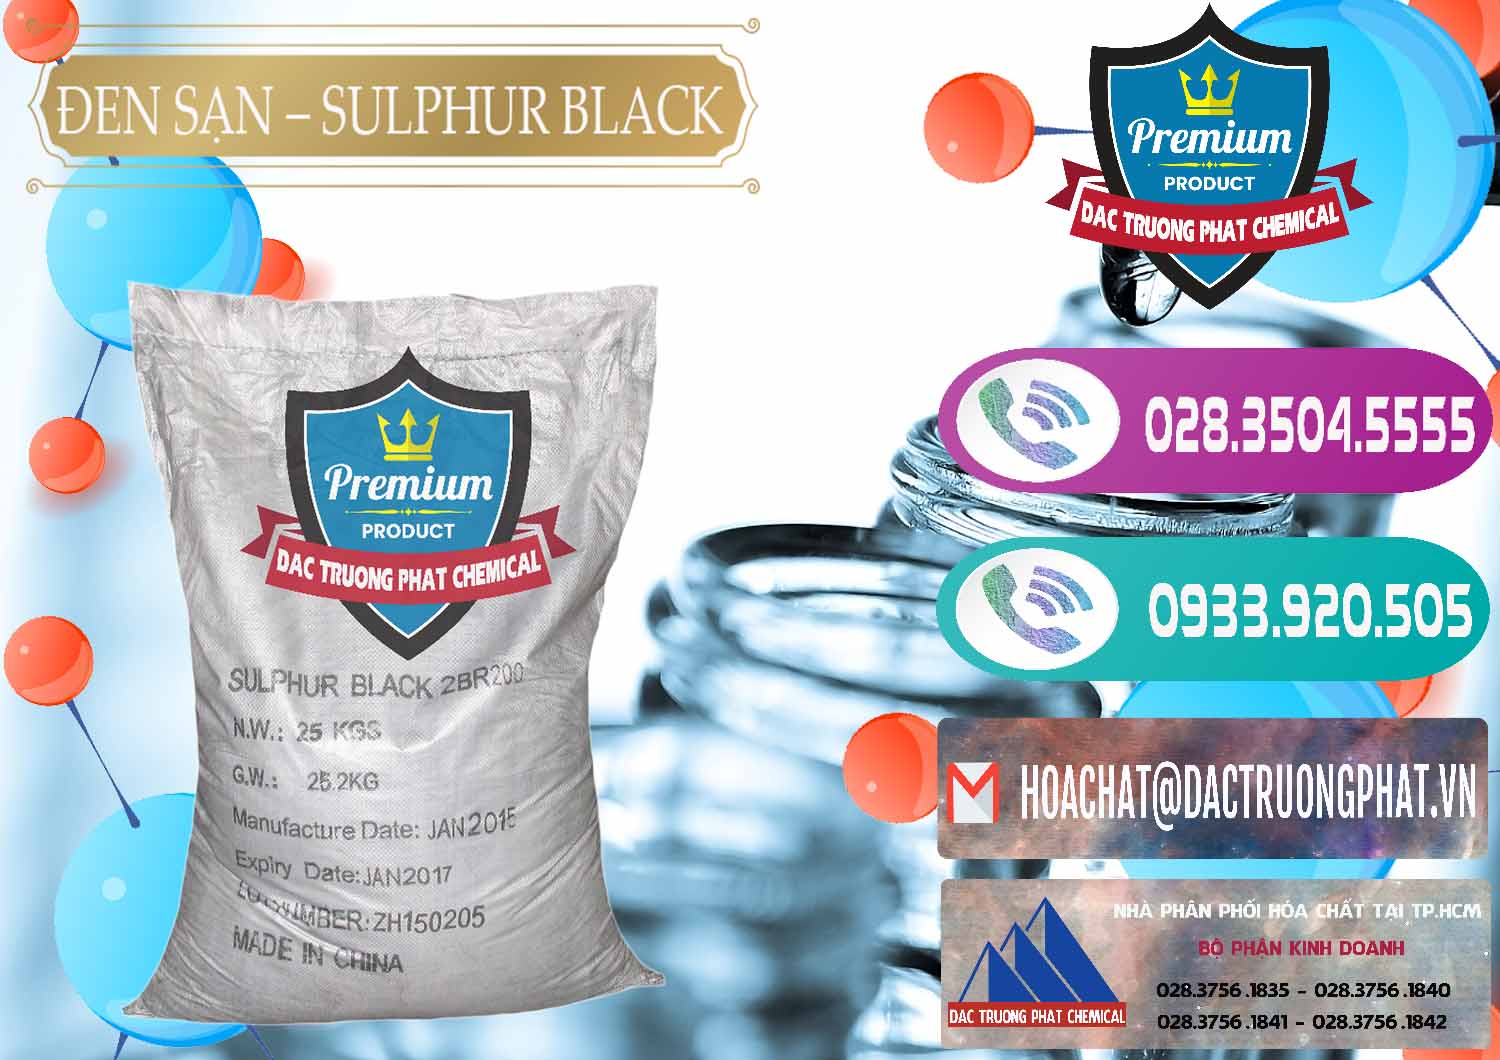 Cty chuyên bán - phân phối Đen Sạn – Sulphur Black Trung Quốc China - 0062 - Chuyên cung cấp & kinh doanh hóa chất tại TP.HCM - hoachatxulynuoc.com